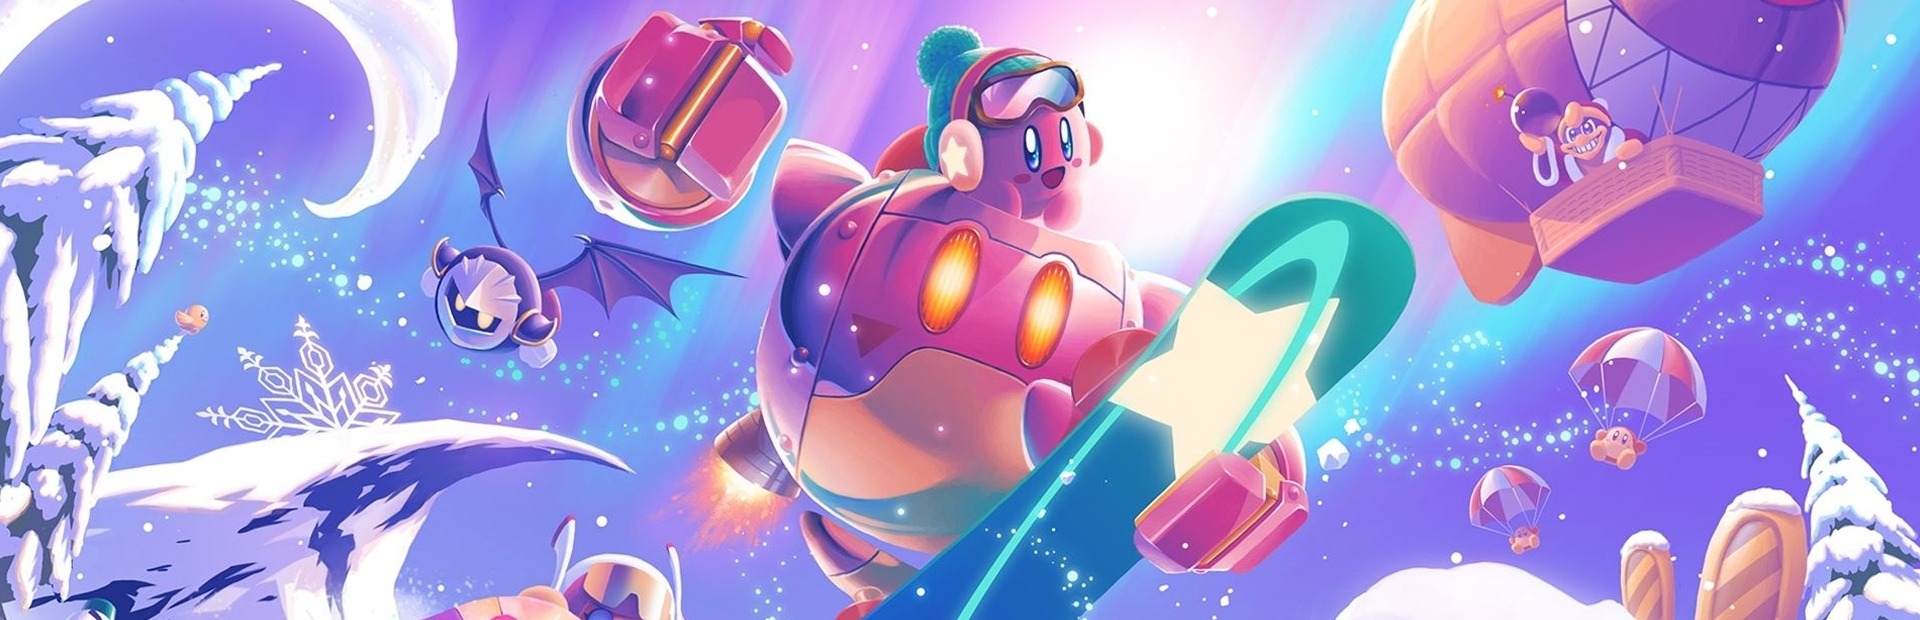 Kirby und das Vergessene Land Switch